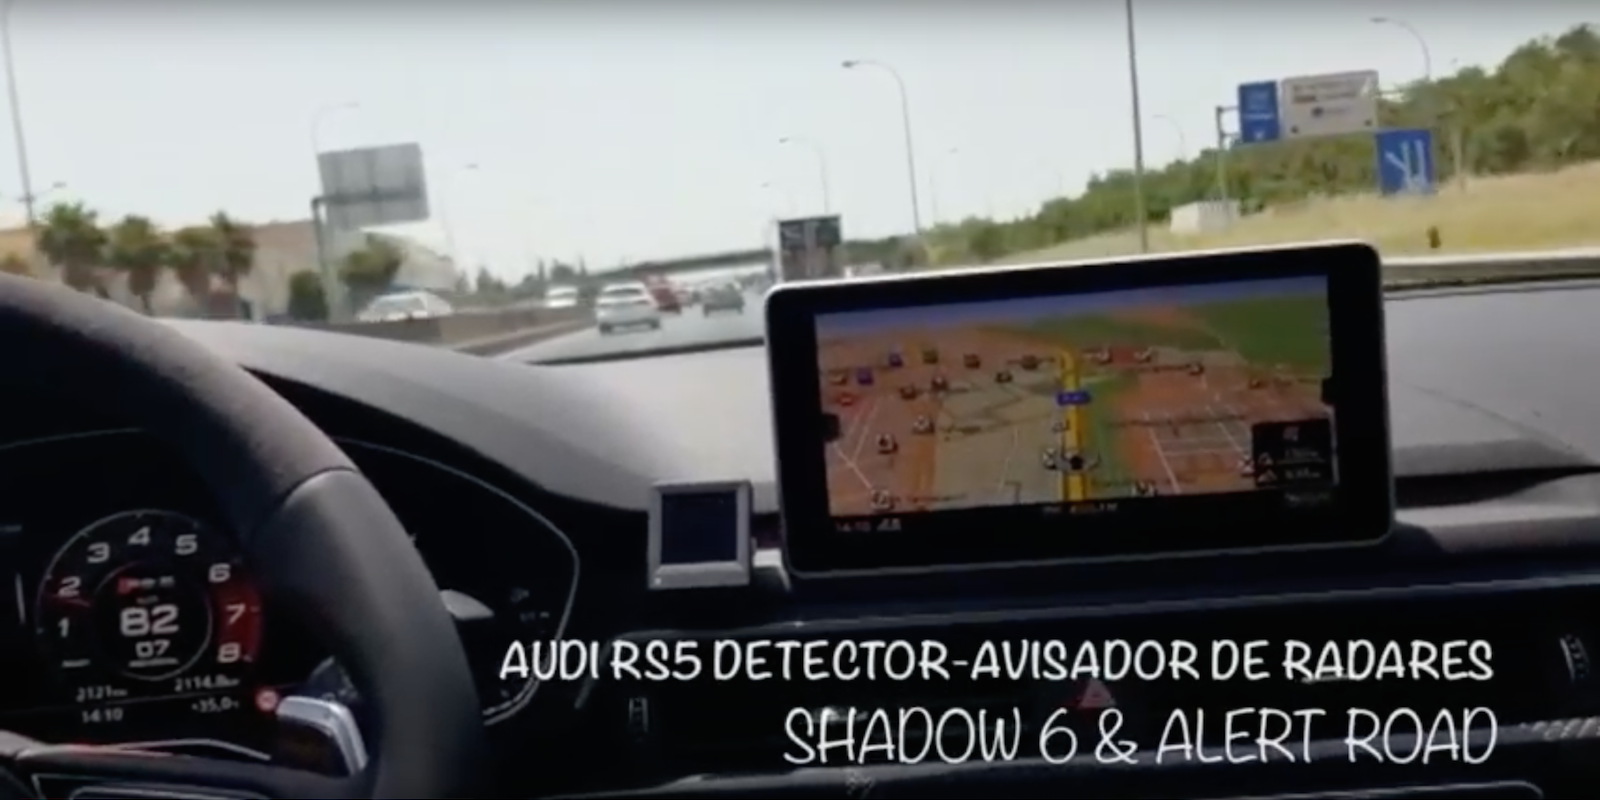 Audi RS5 Sistema Detector-Avisador de radares Shadow 6 & Alert Road